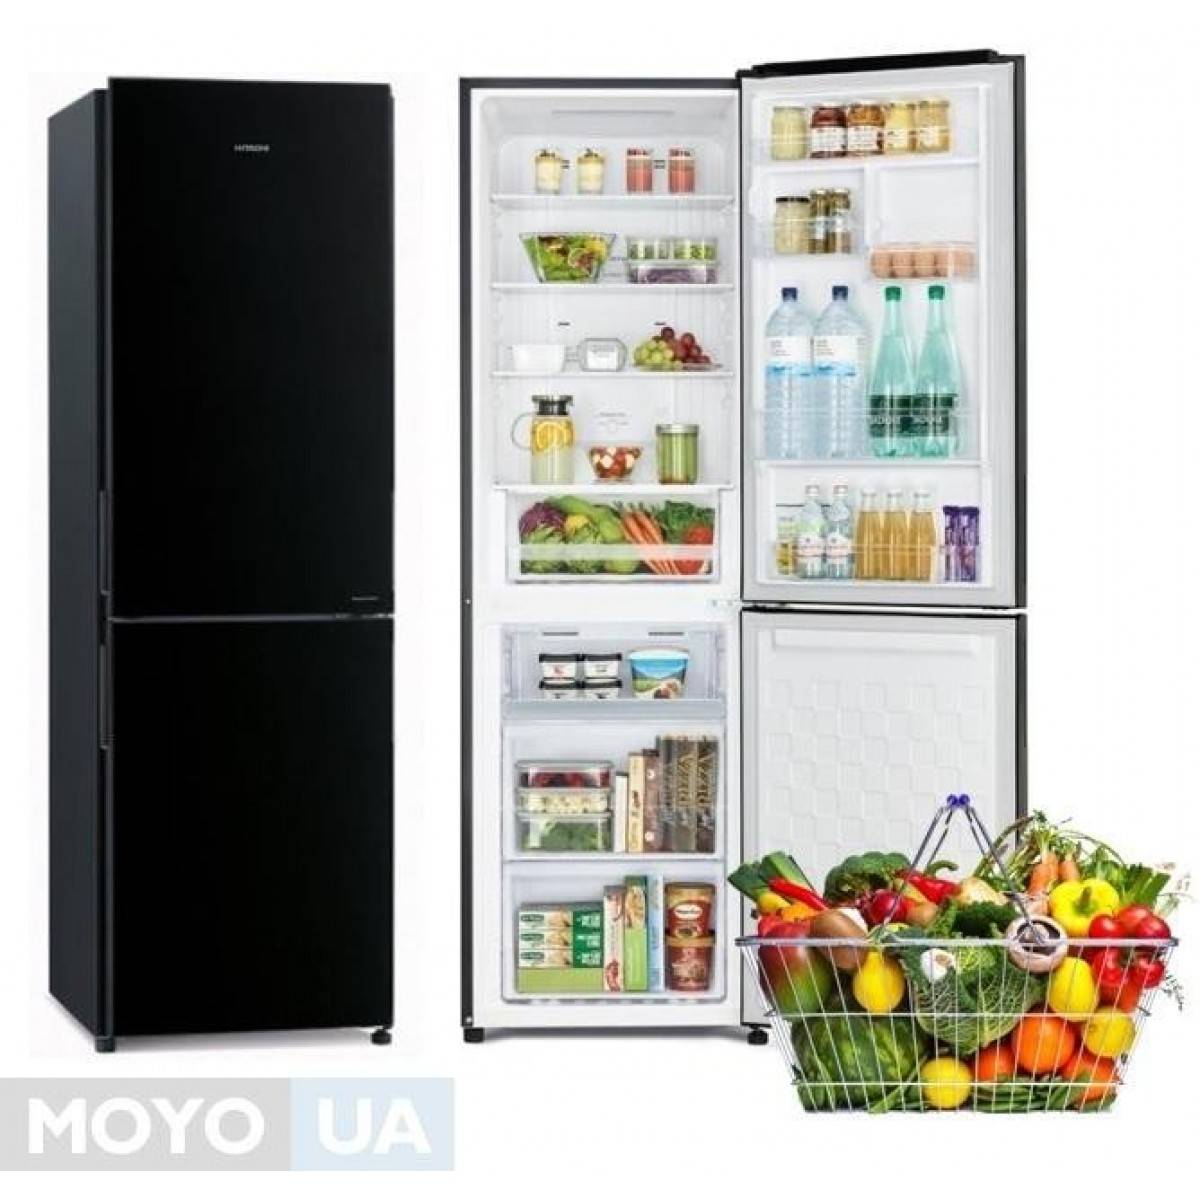 Лучшие производители холодильников: рейтинг 2022 года по качеству и надежности их моделей